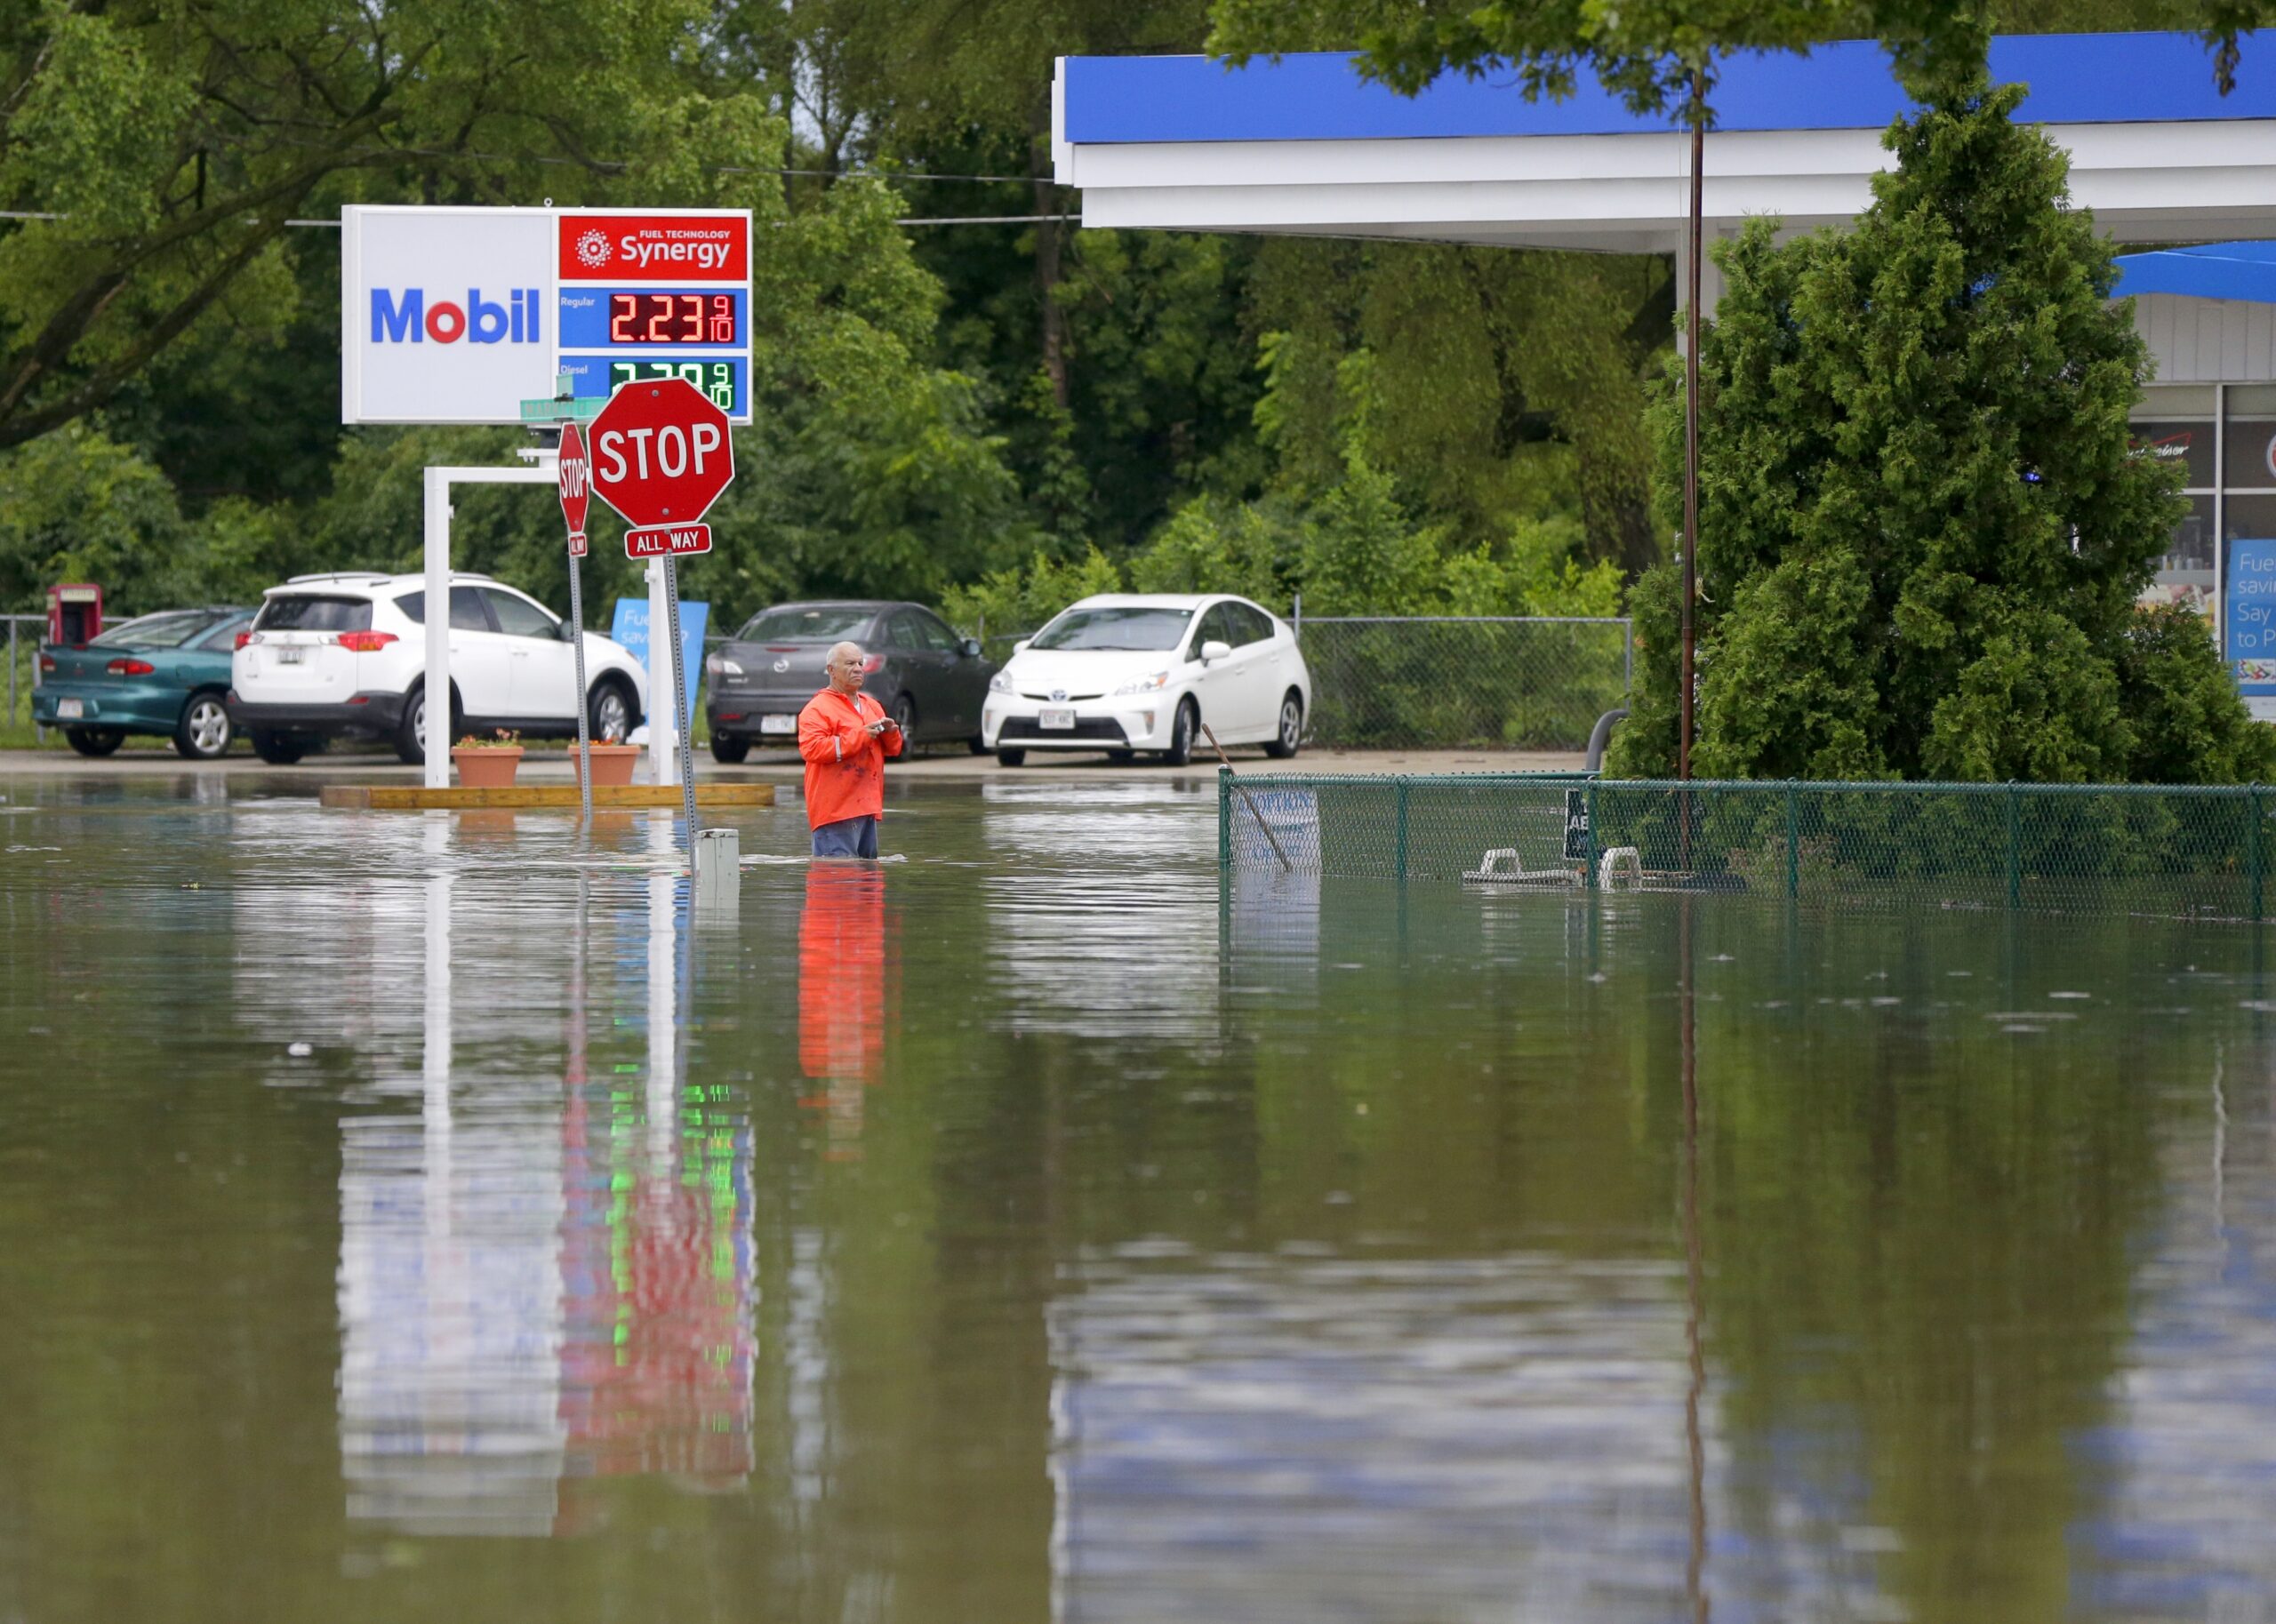 Mobil gas station in Burlington flooded